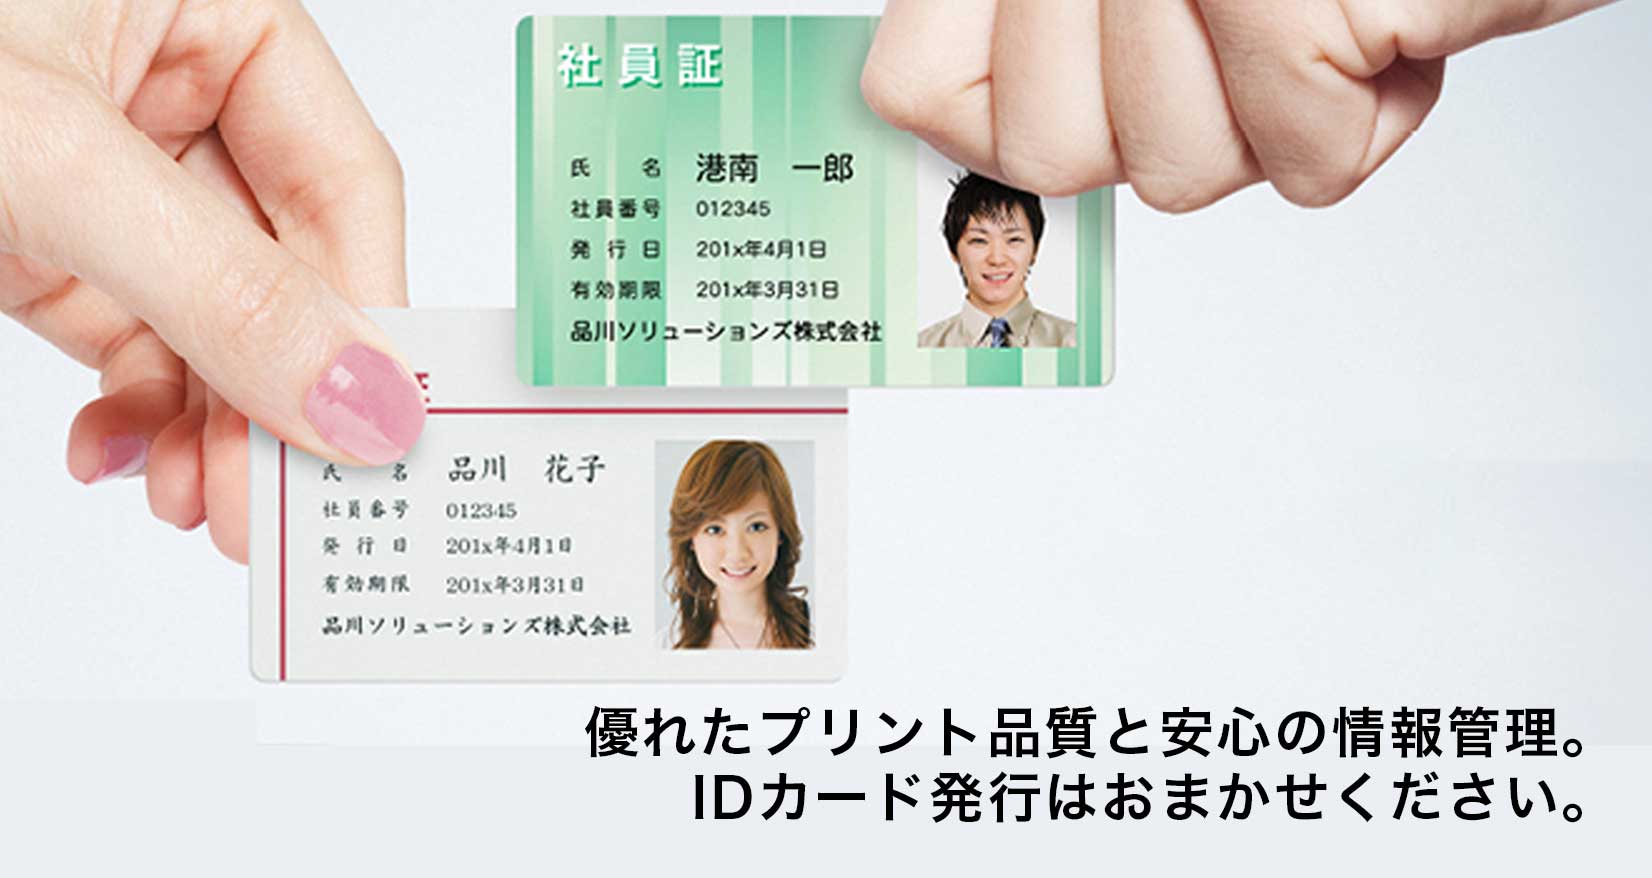 優れたプリント品質と安心の情報管理。IDカード発行はおまかせください。​